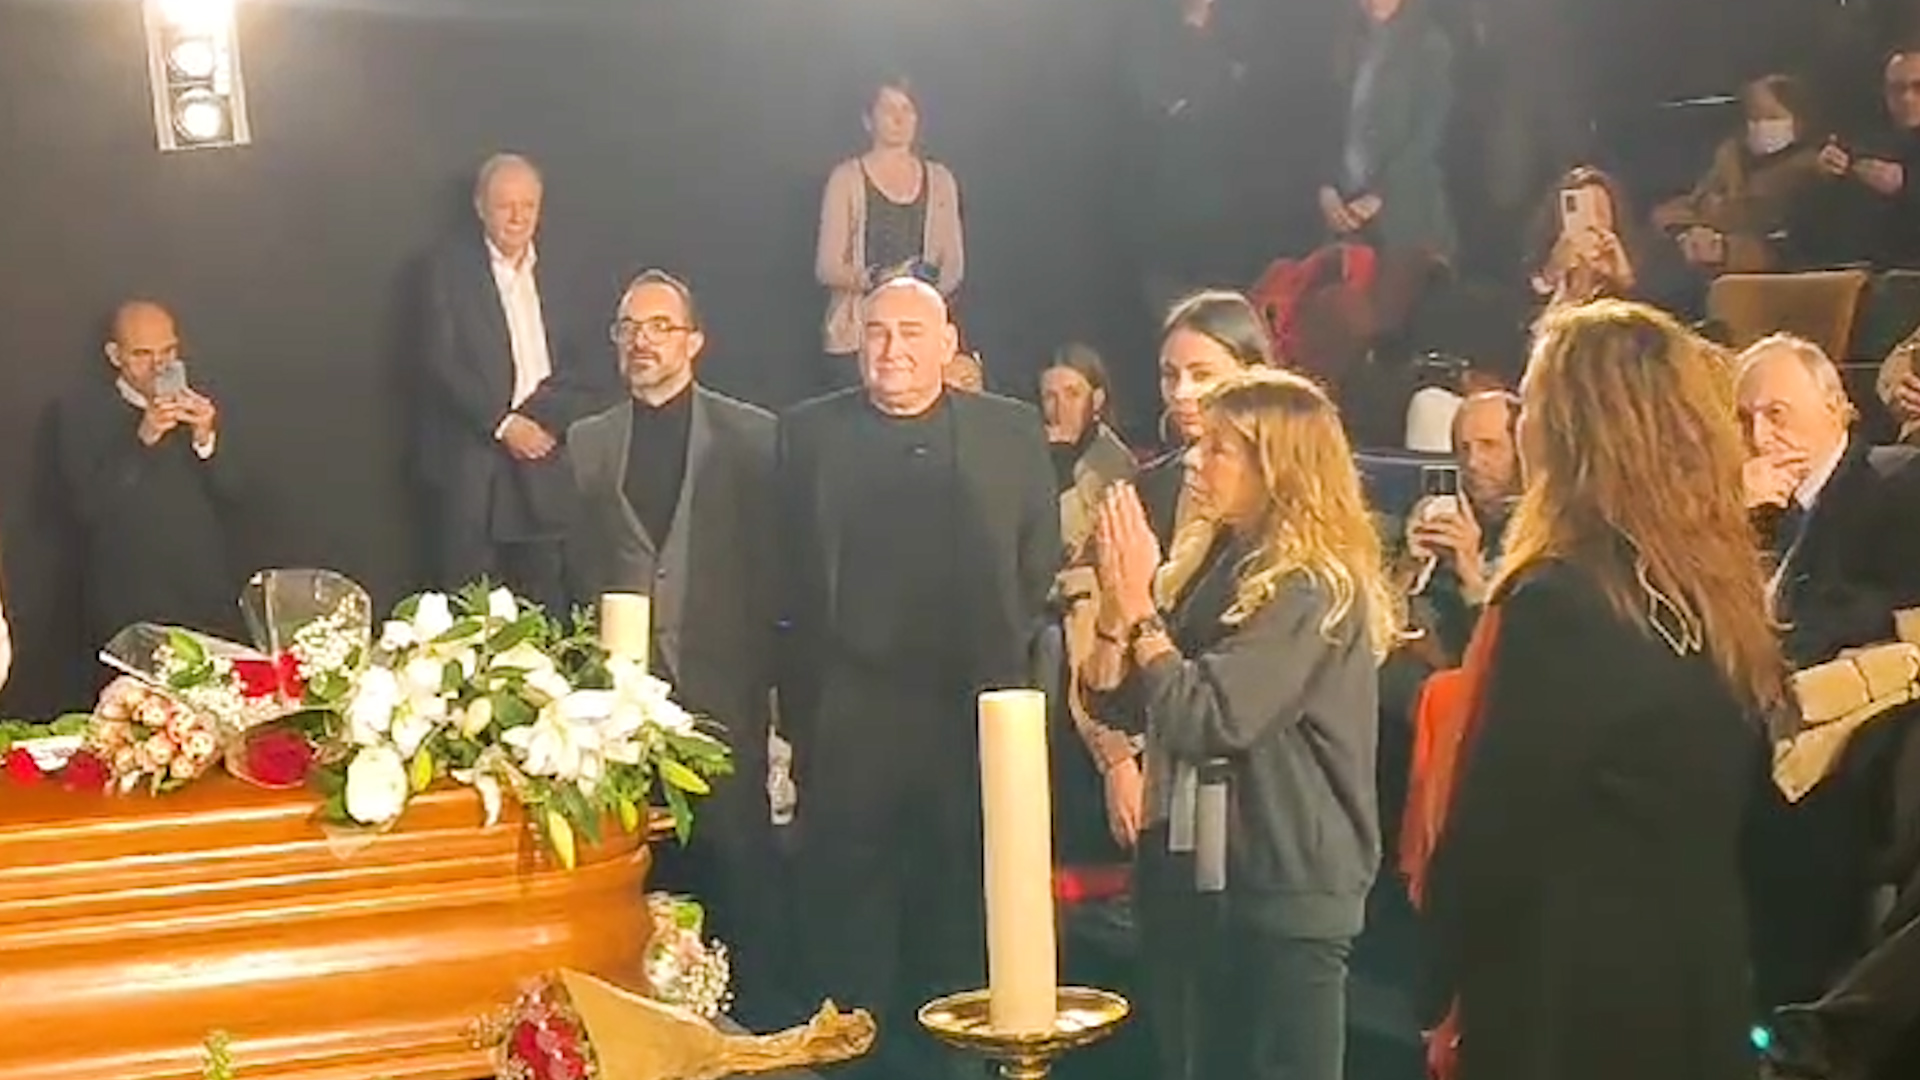 La cantante Jeanette dedica "Por qué te vas" a Carlos Saura en su capilla ardiente